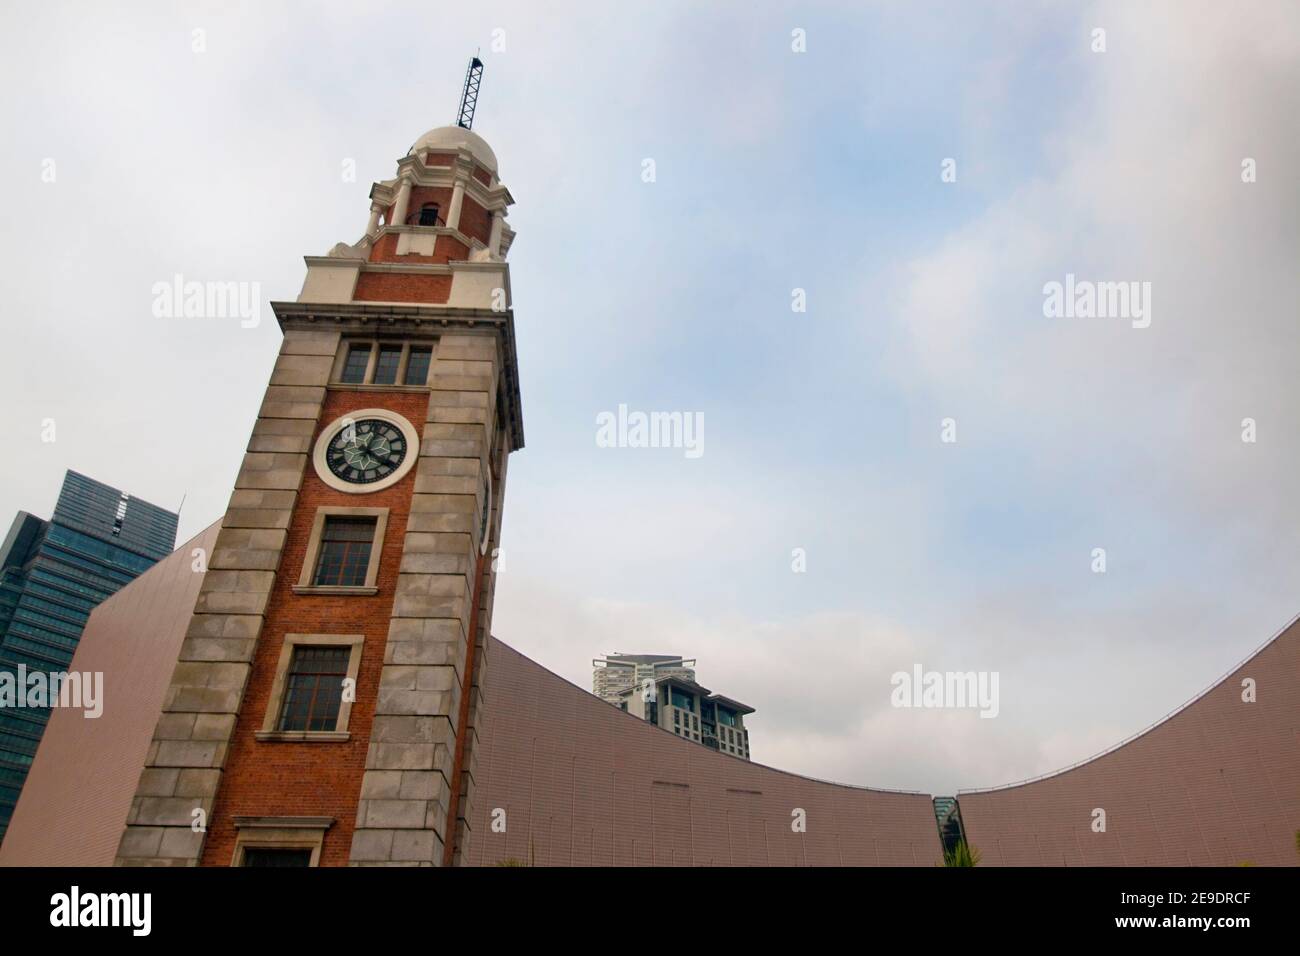 Old clock tower on Chim Sha Tsui, Kowloon, Hong Kong, China Stock Photo